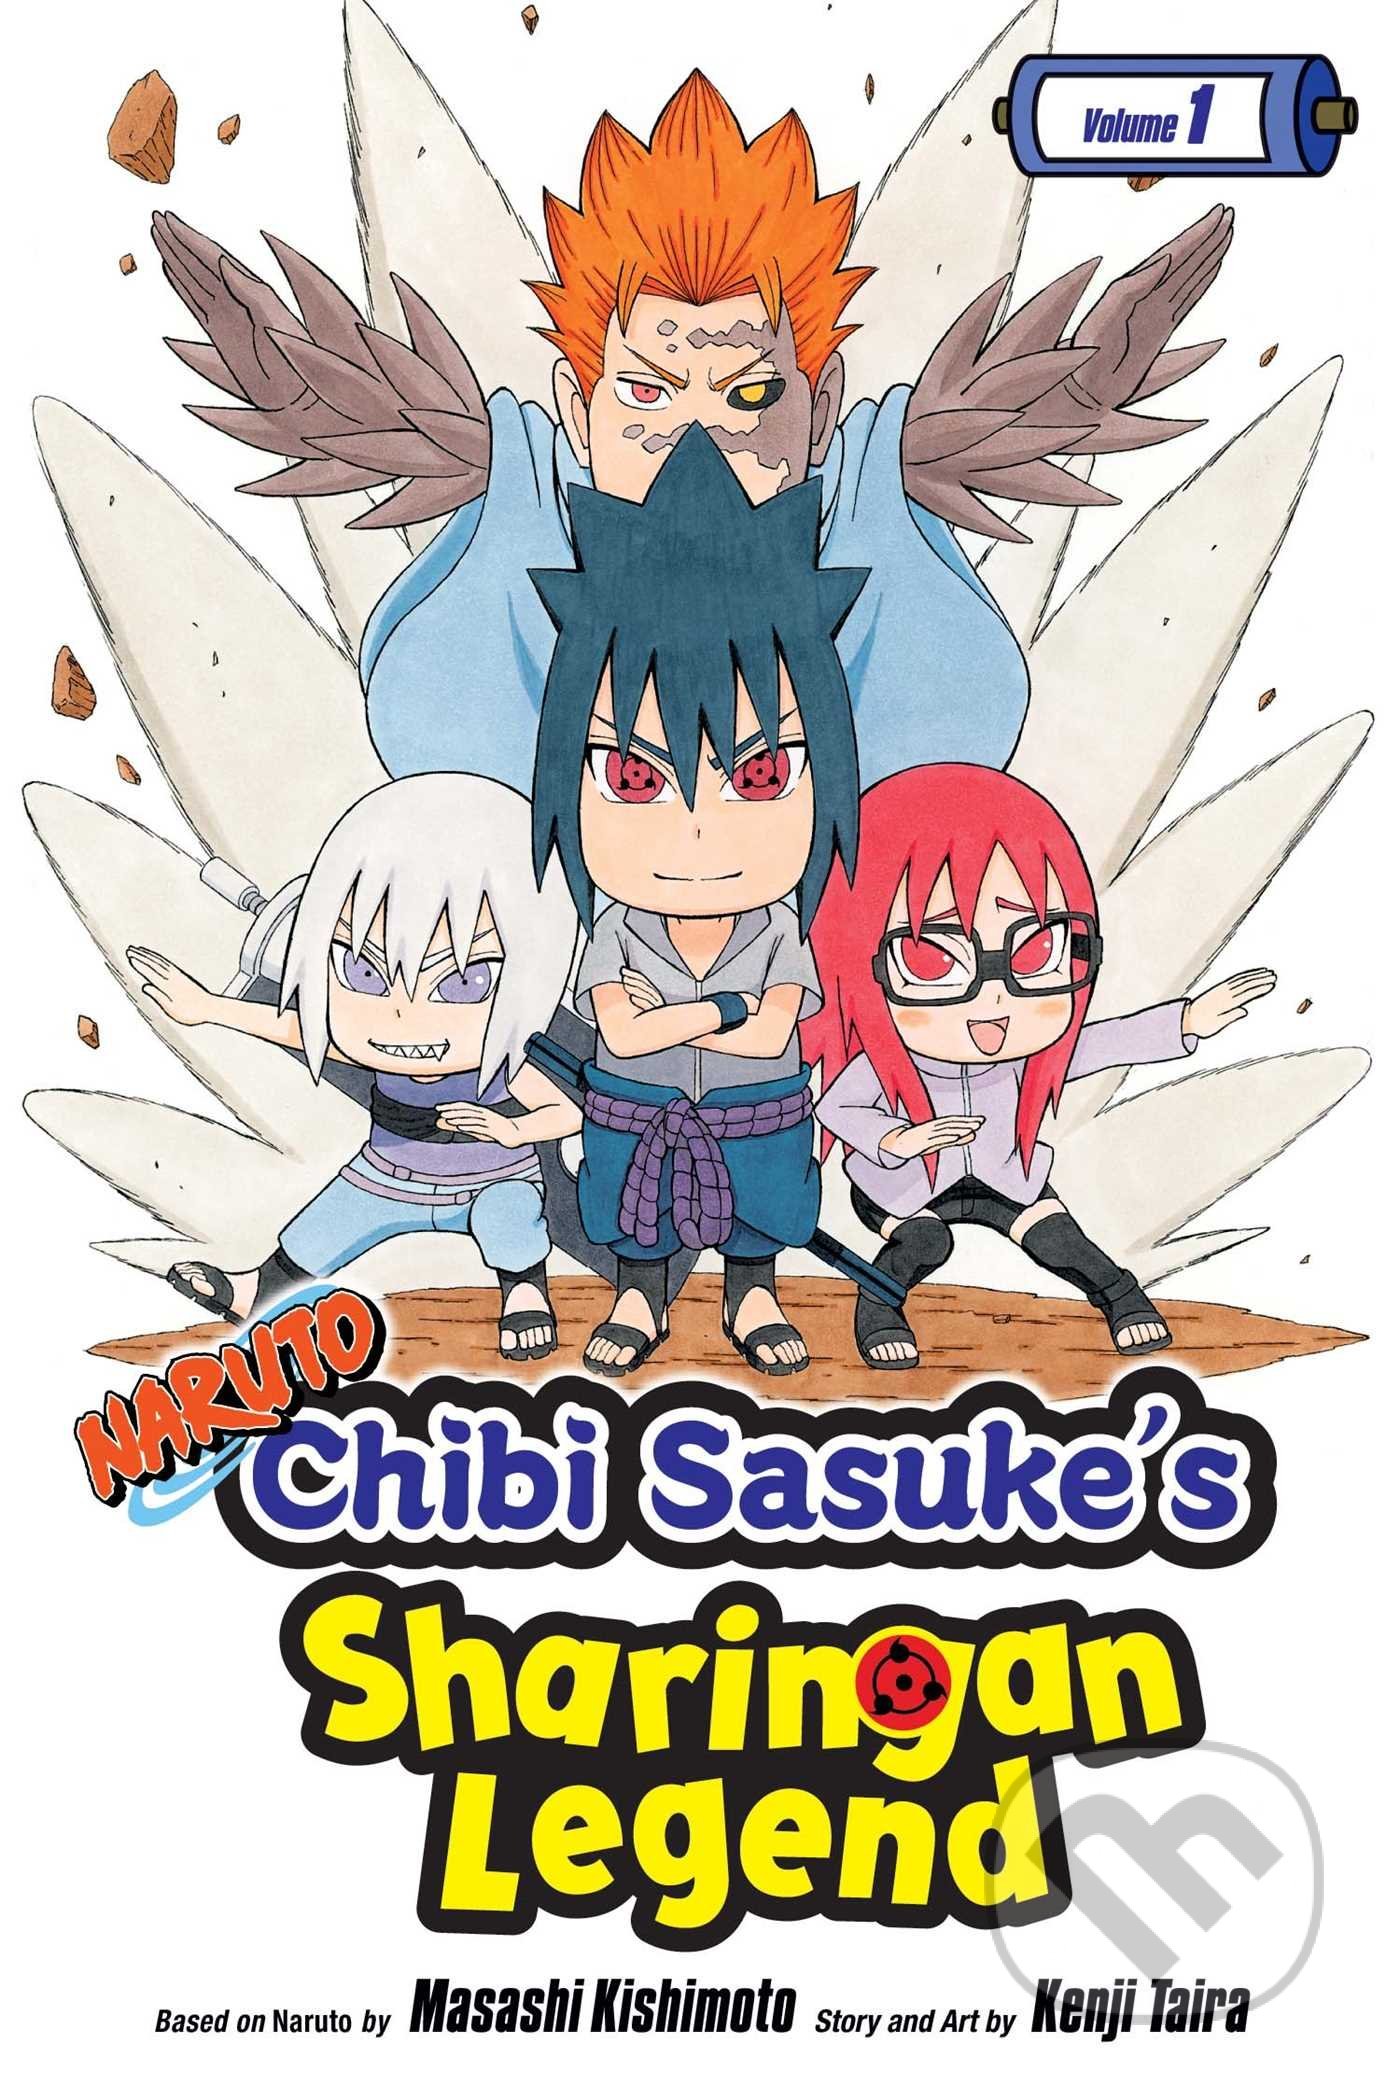 Naruto: Chibi Sasuke&#039;s Sharingan Legend, Vol. 1 - Kenji Taira, Masashi Kishimoto, Viz Media, 2017